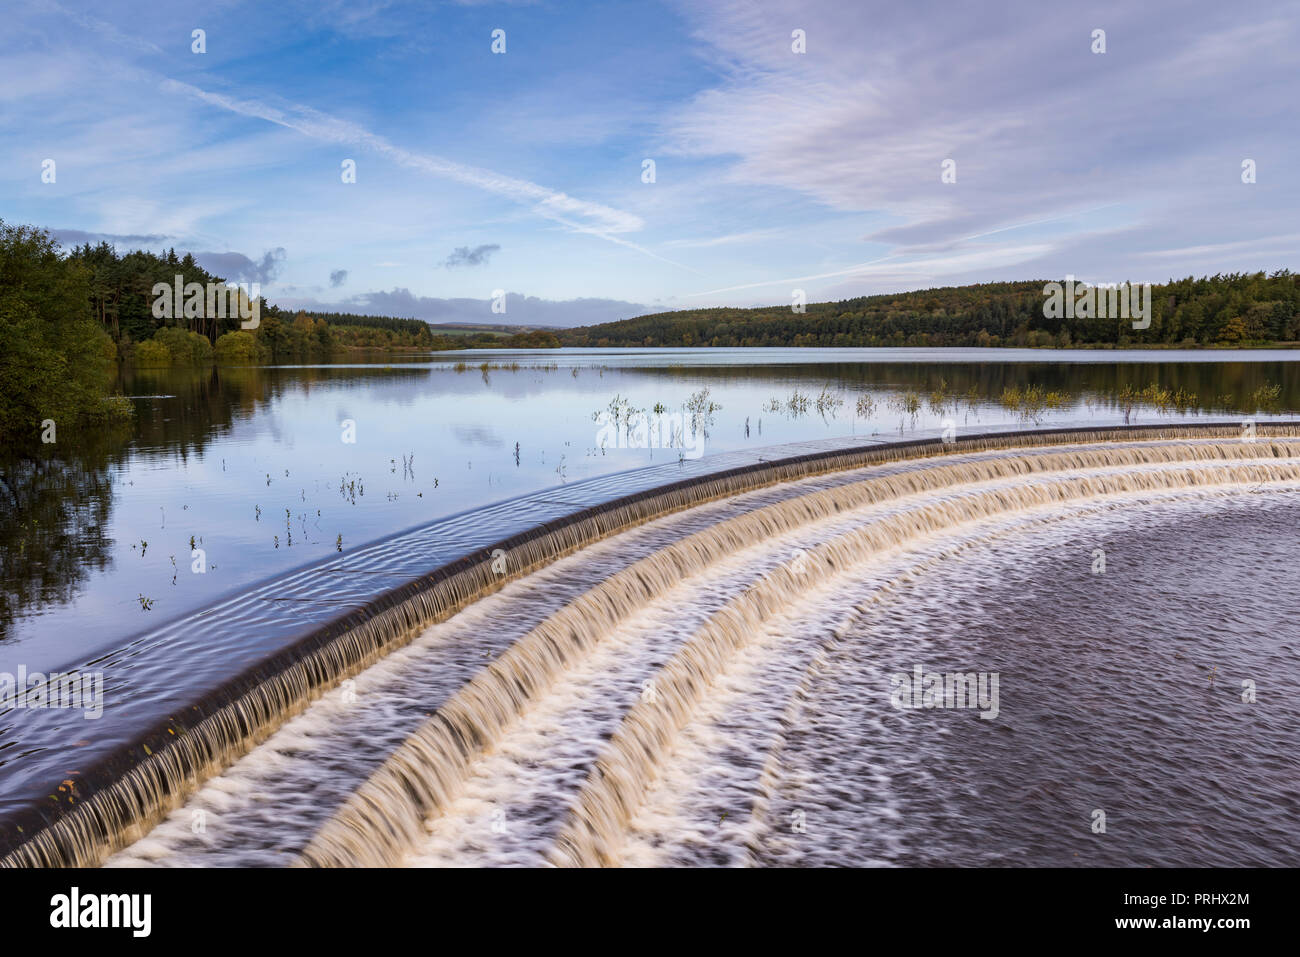 L'acqua che scorre su stramazzo da calme scenic viale alberato di lago, sotto il profondo blu del cielo - Serbatoio Fewston, Washburn Valley, North Yorkshire, Inghilterra, Regno Unito. Foto Stock